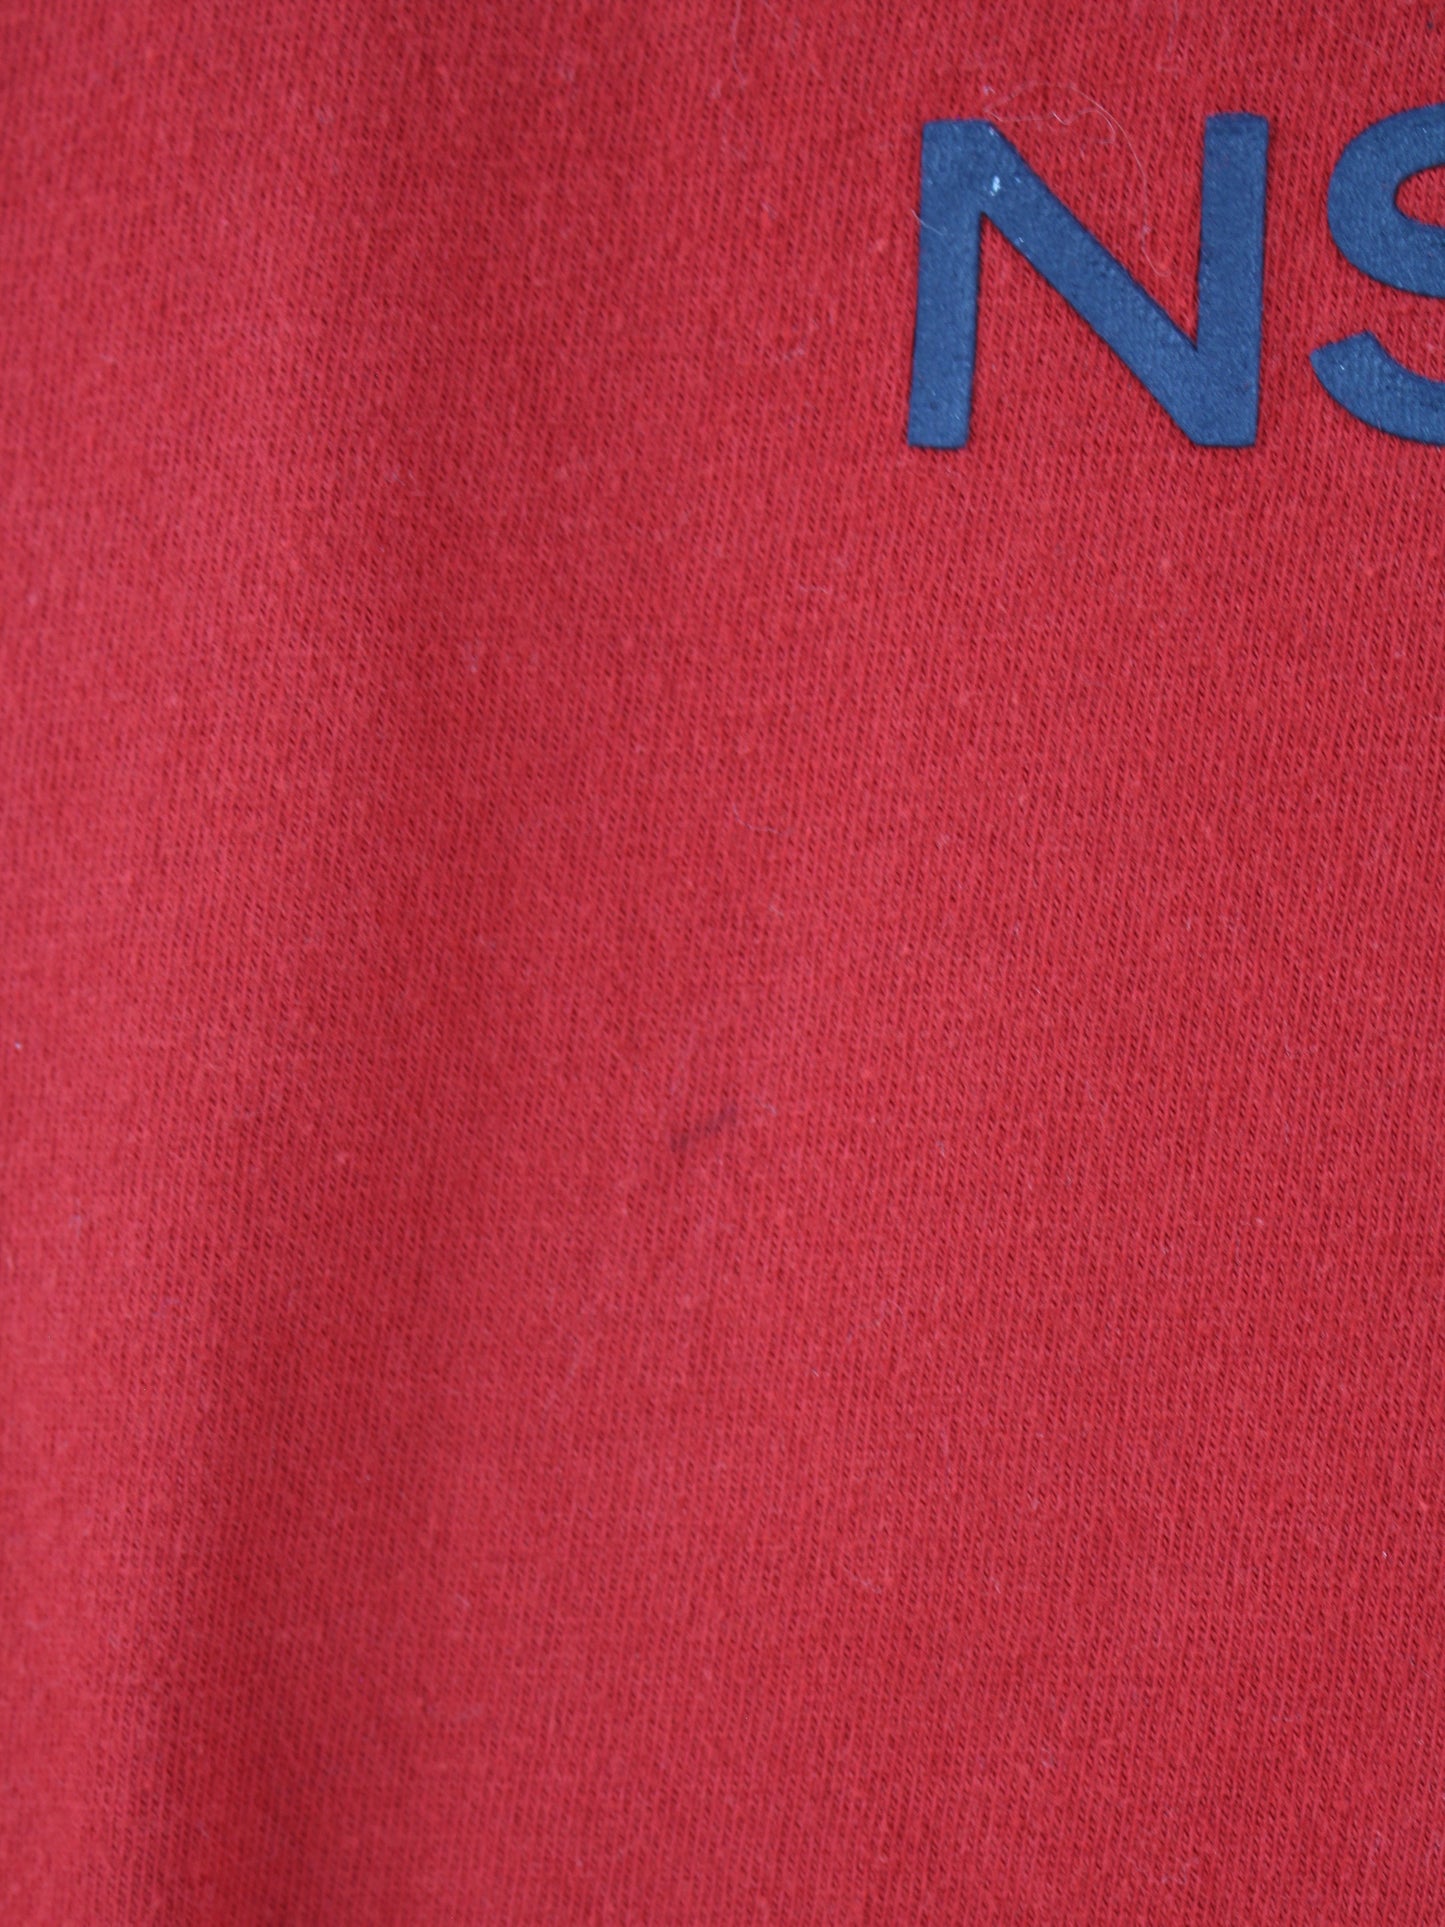 Nautica Print T-Shirt Rot XL